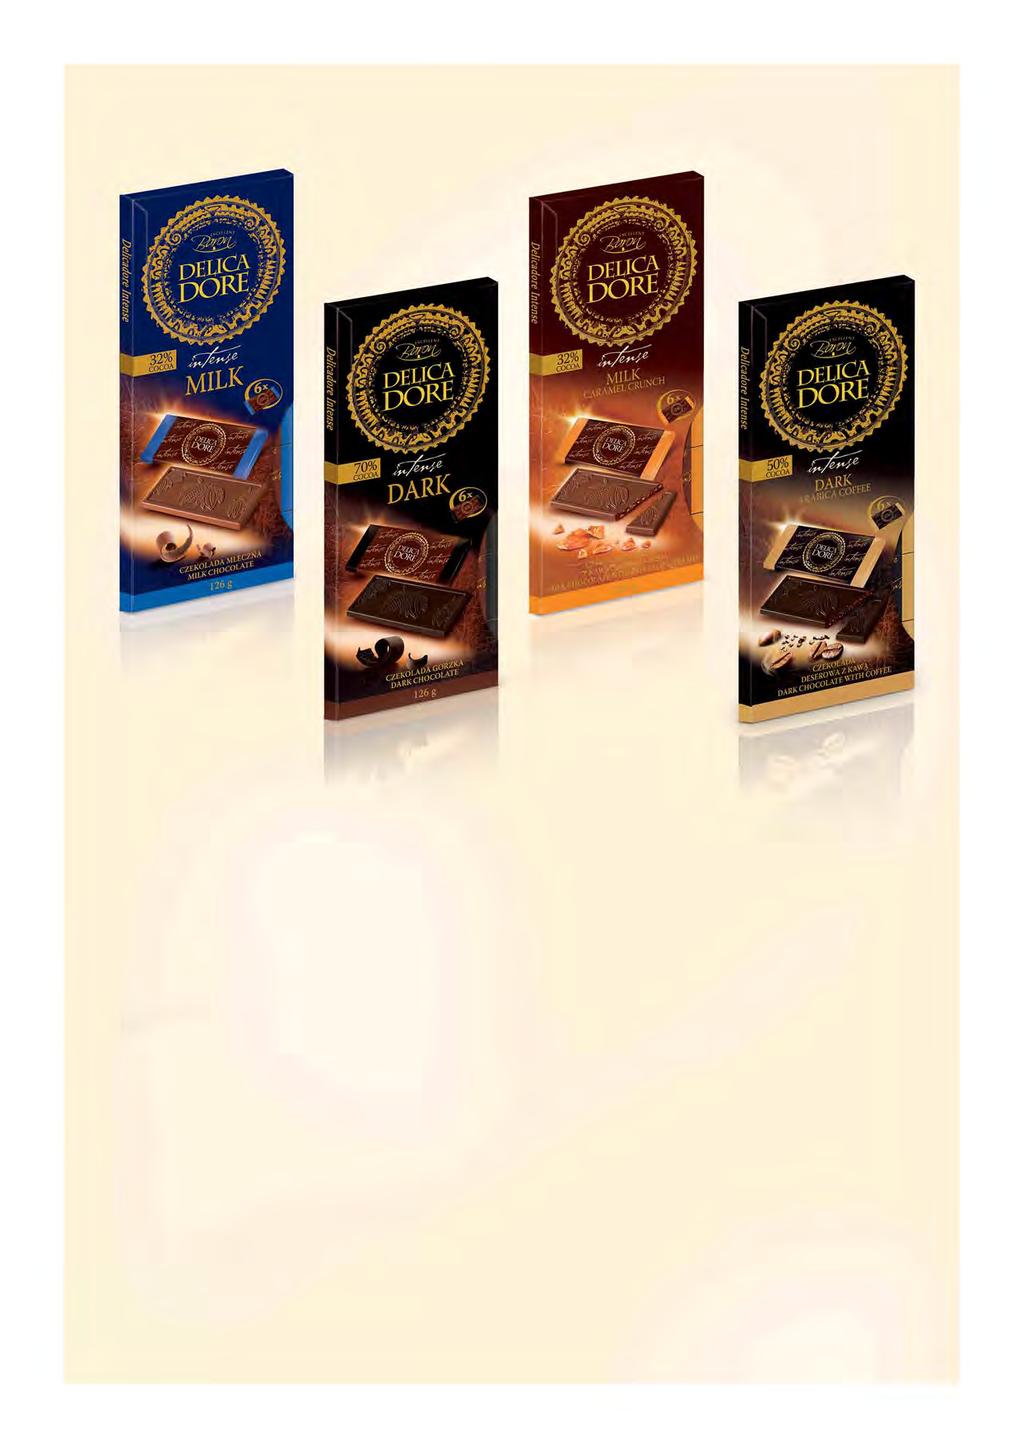 70% kakao Intensywne czekoladowe doświadczenie ukryte w 6 małych tabliczkach o smakach: czekolady mlecznej, ciemnej czekolady 70% kakao, czekolady mlecznej z chrupiącymi kawałkami toffi i ciemnej